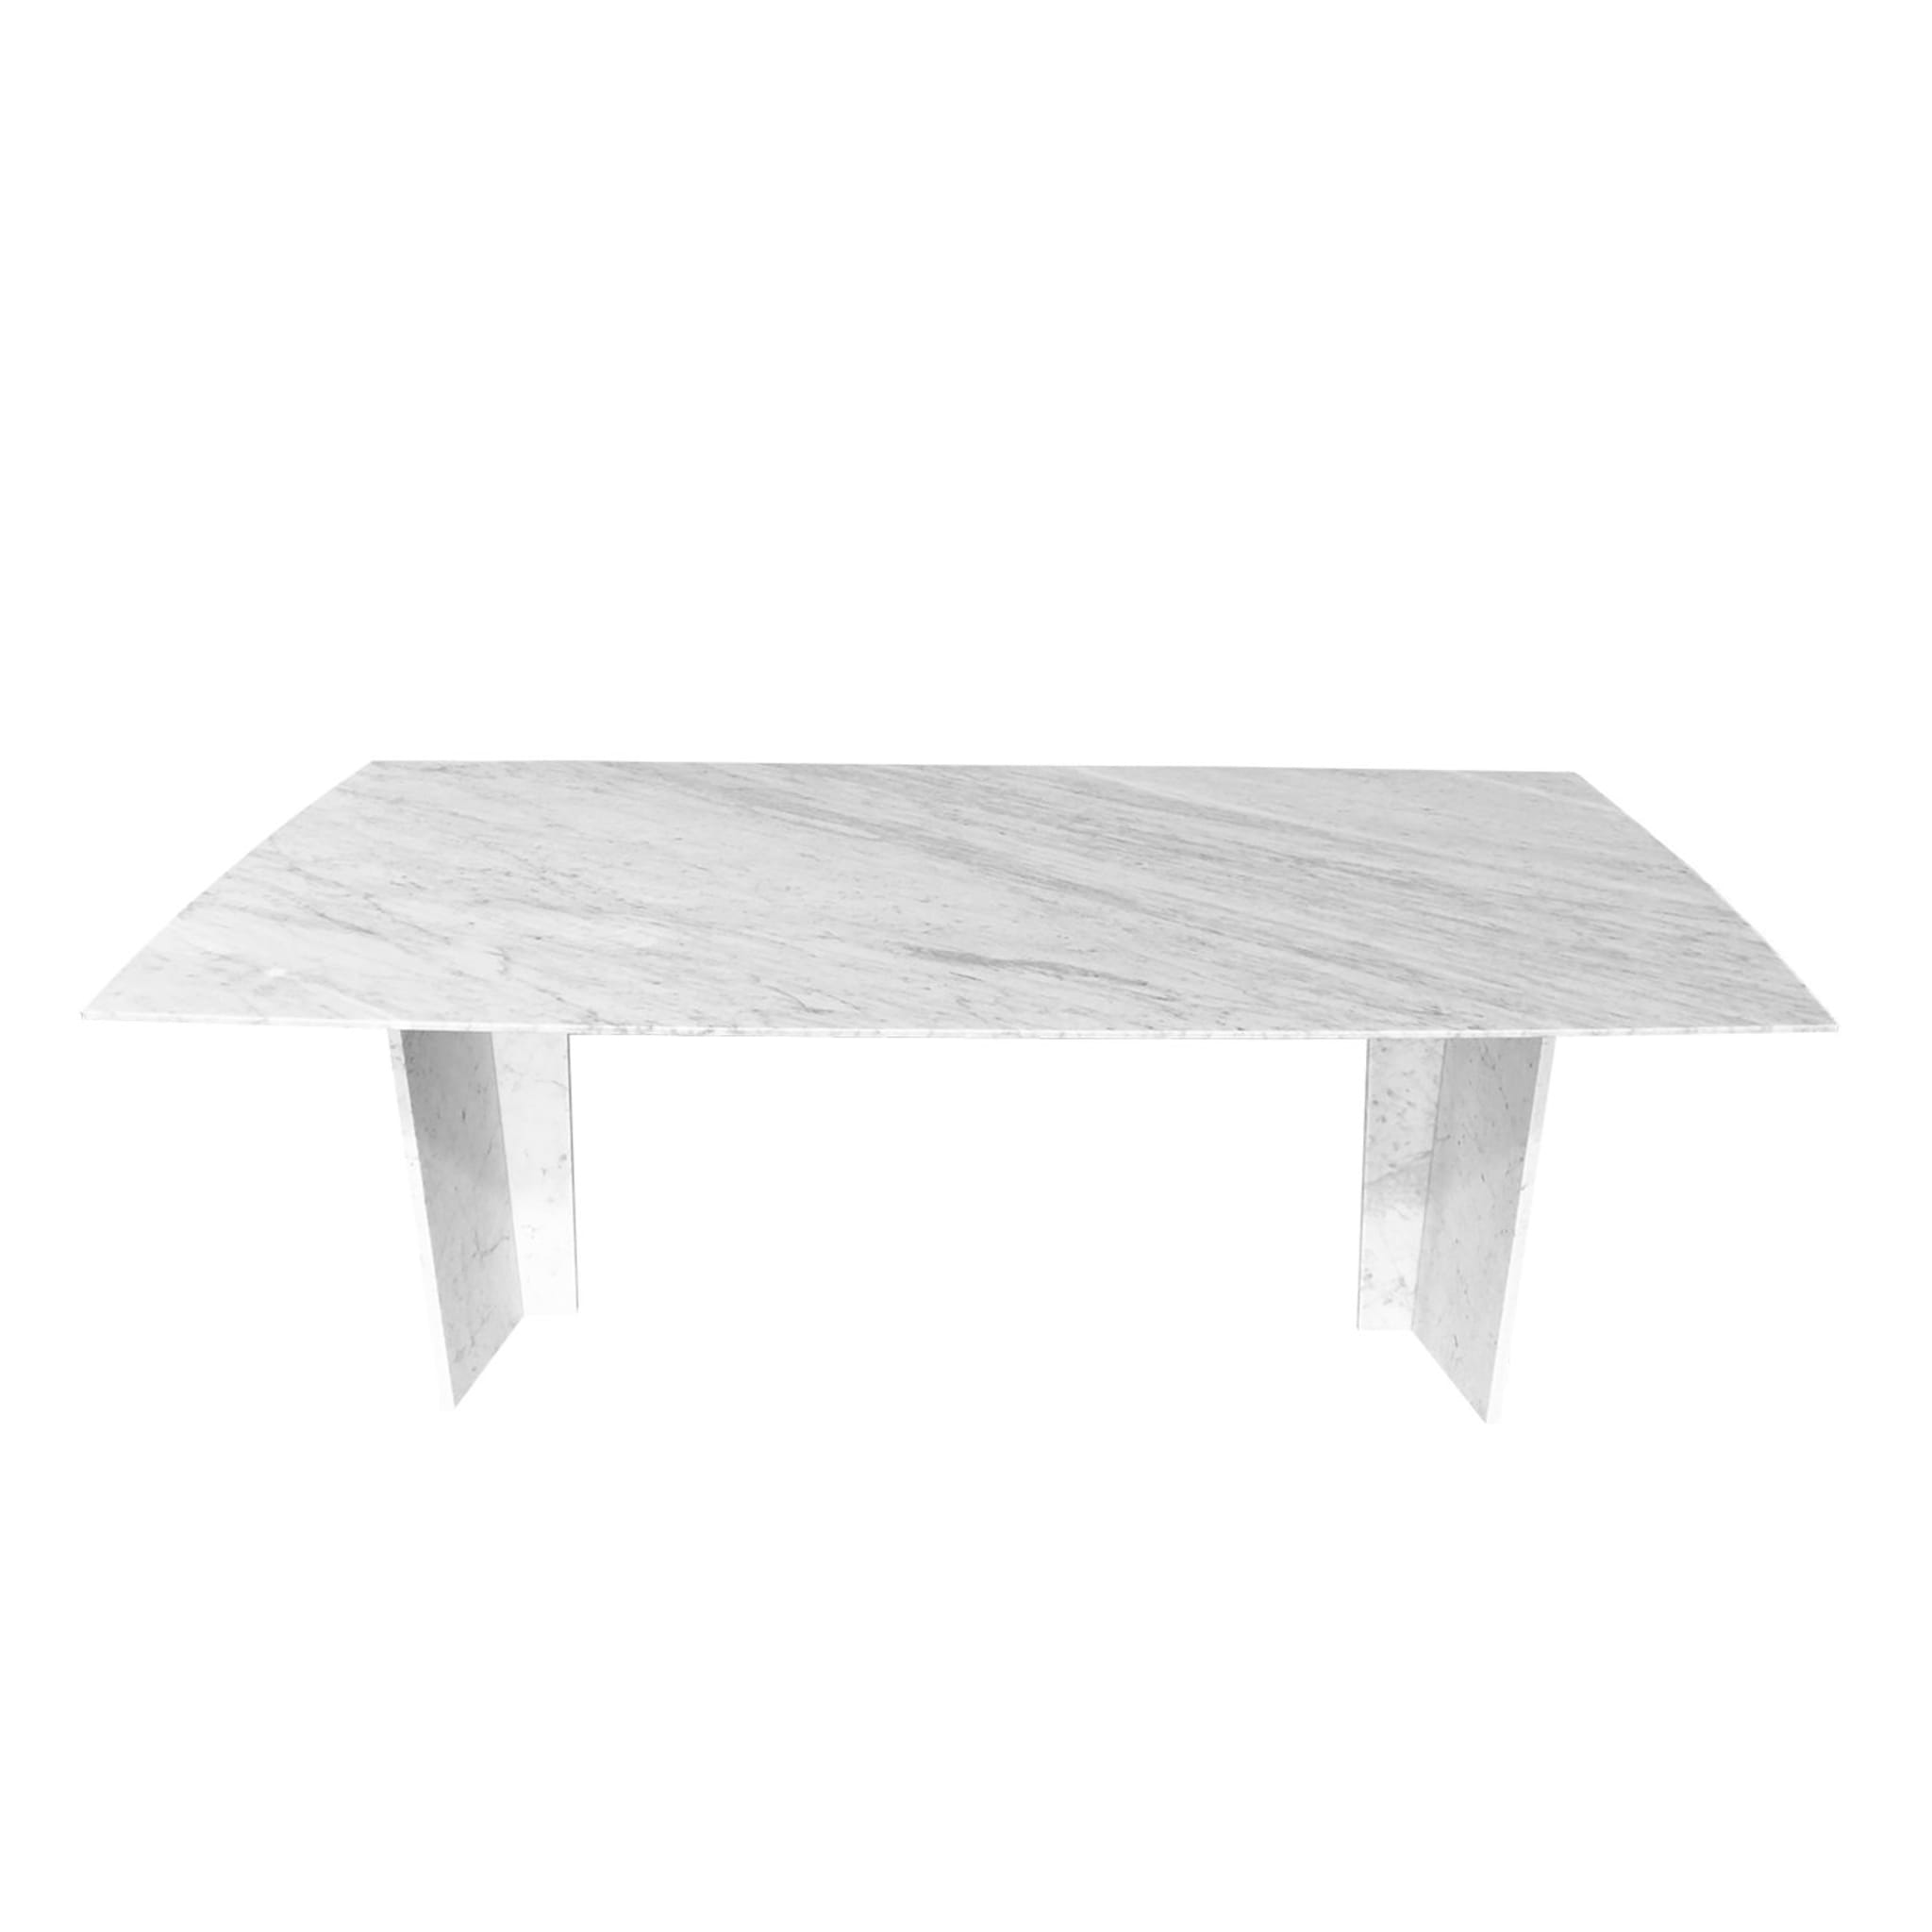 Oblong Steven Table in White Marble - Alternative view 2